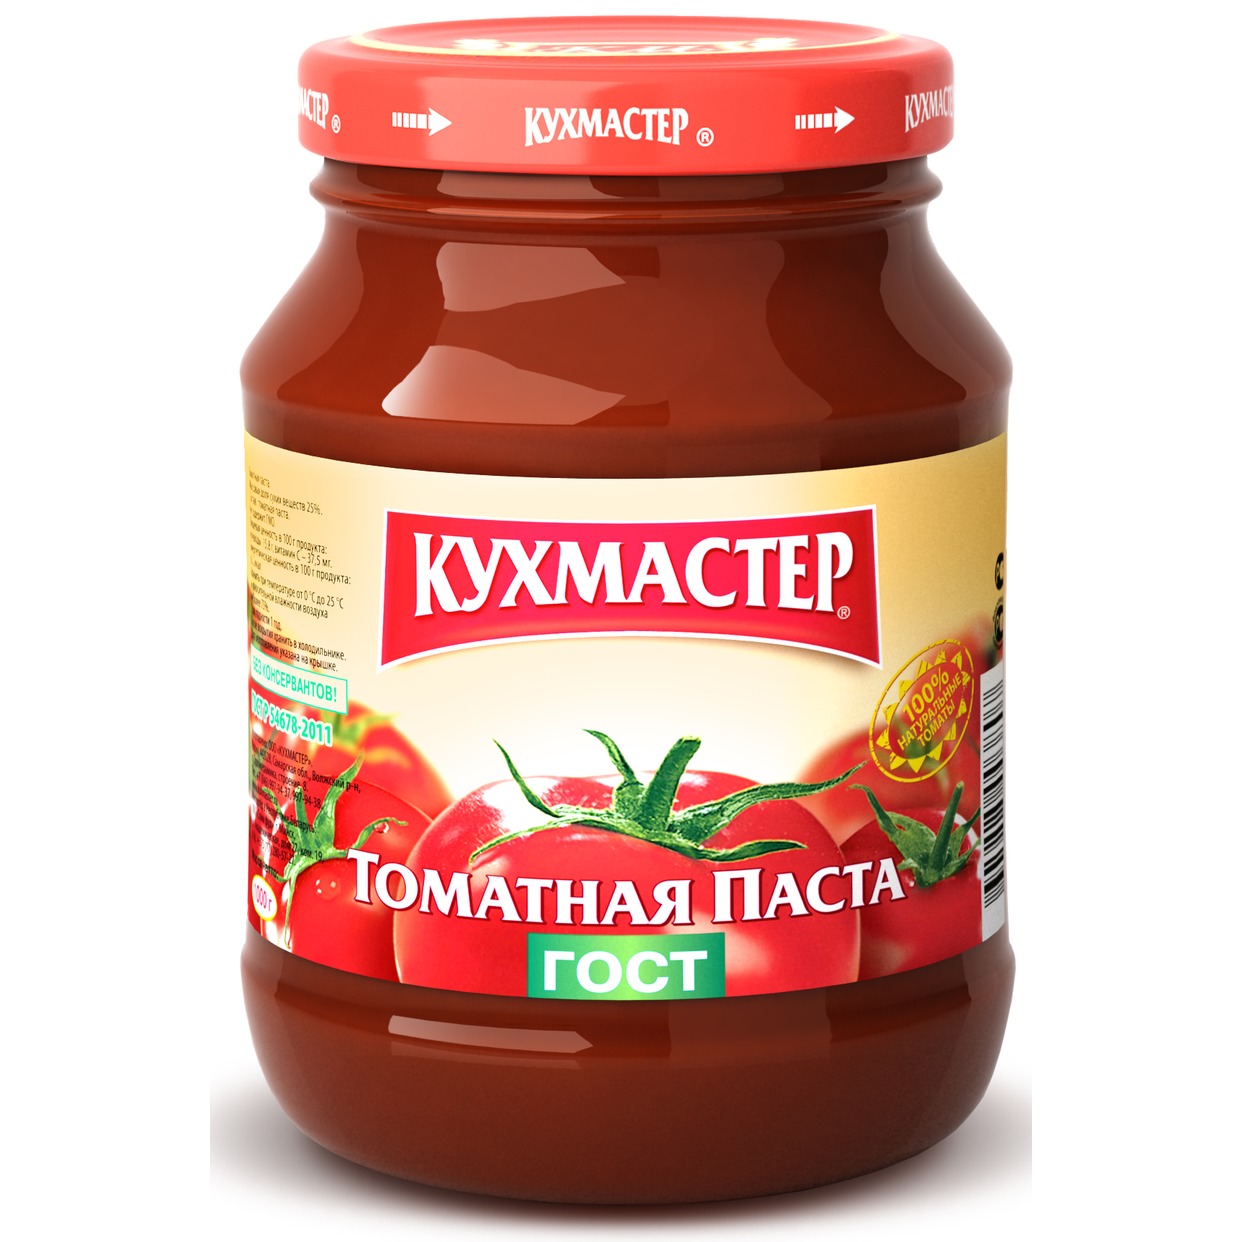 Паста томатная, Кухмастер, 270 г по акции в Пятерочке